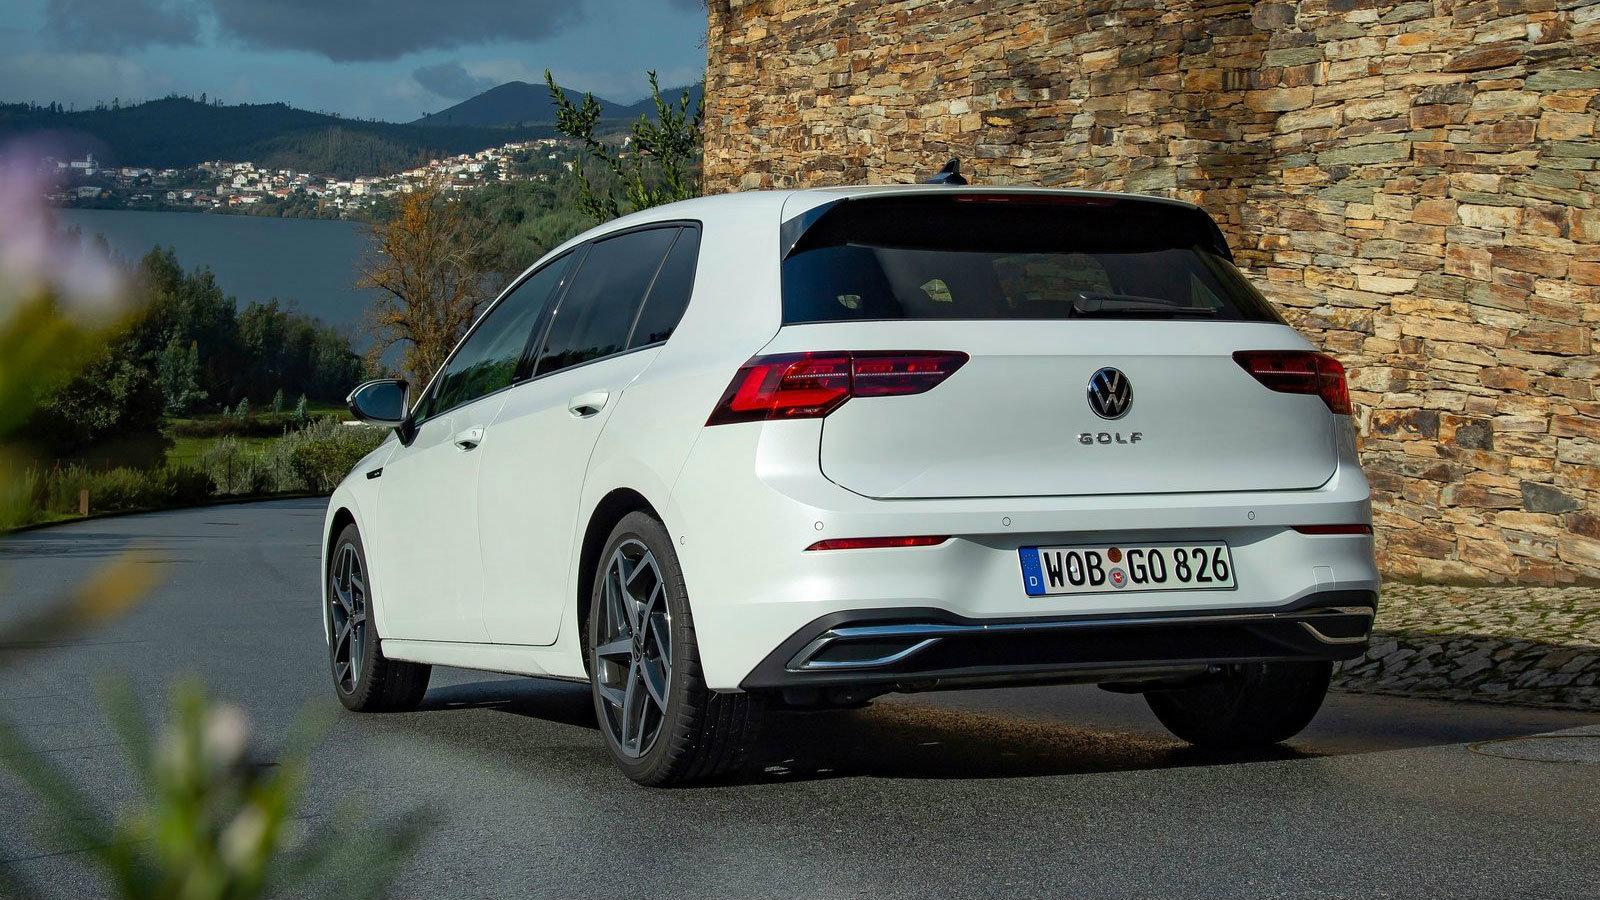 Ετοιμοπαράδοτα Volkswagen με όφελος έως 2.500 ευρώ